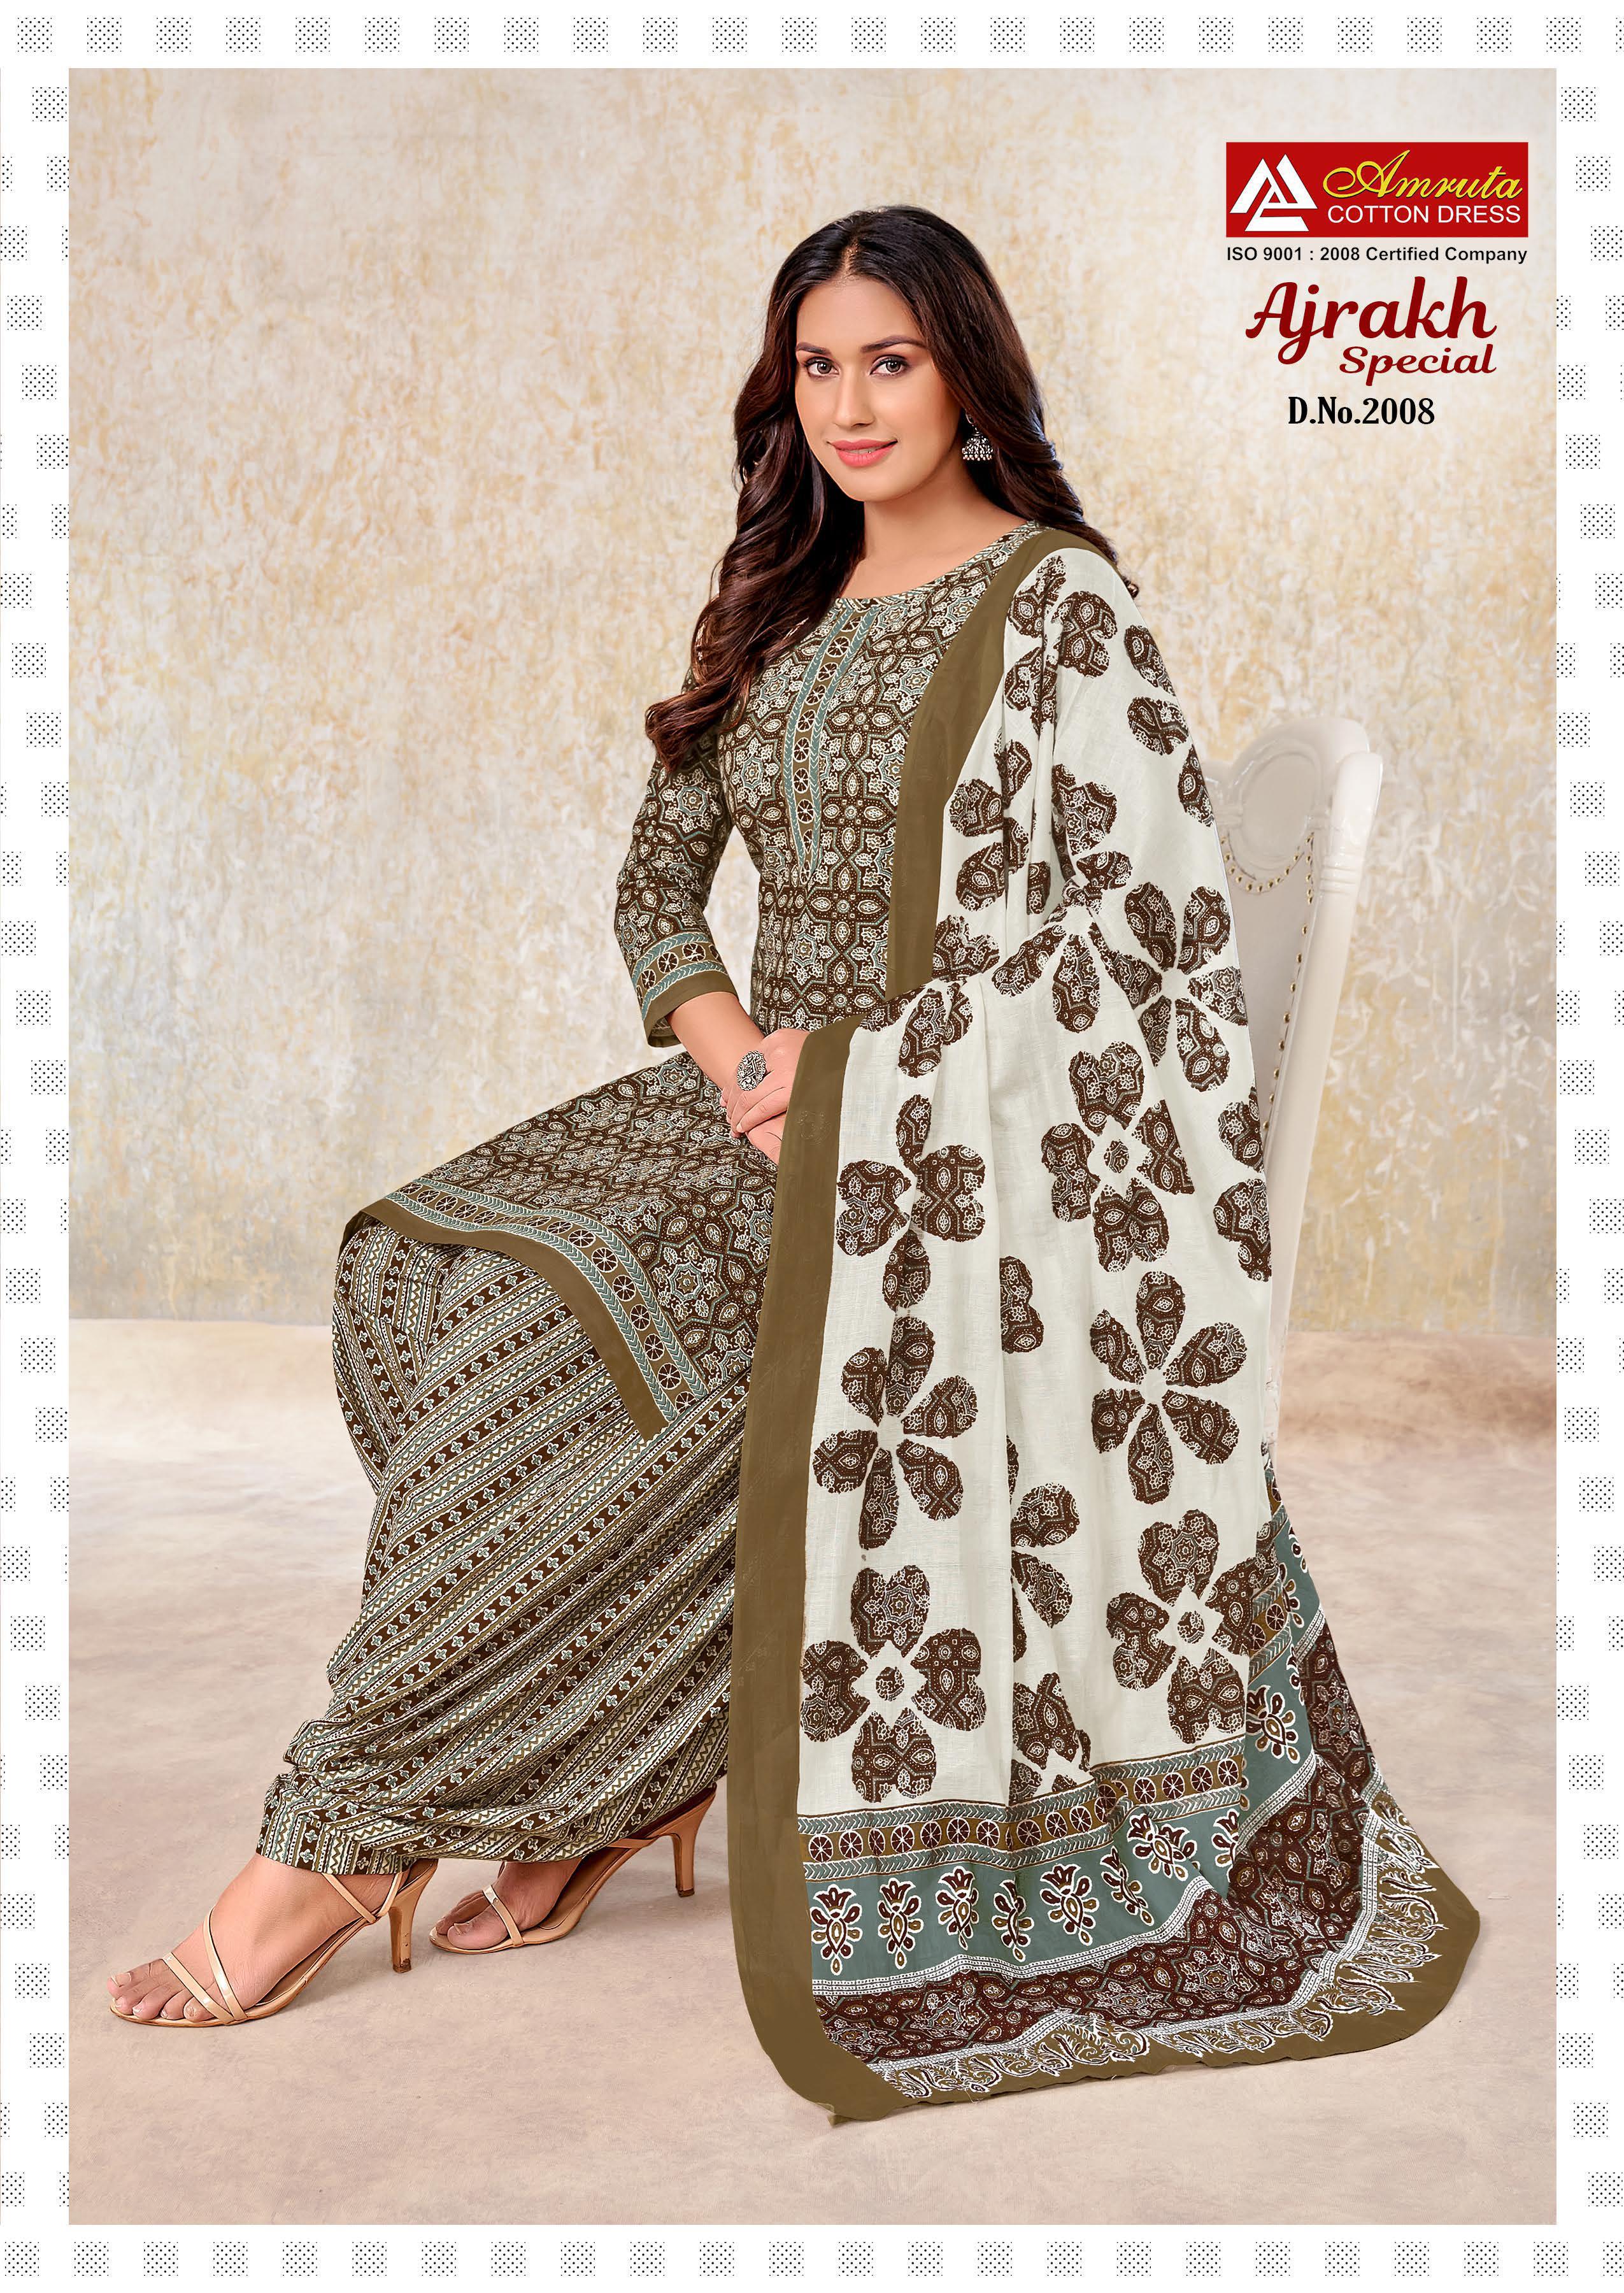 Amruta Cotton Dress Ajrakh Special Vol 2 Cotton Dress Material Wholesale Supplier Jetpur